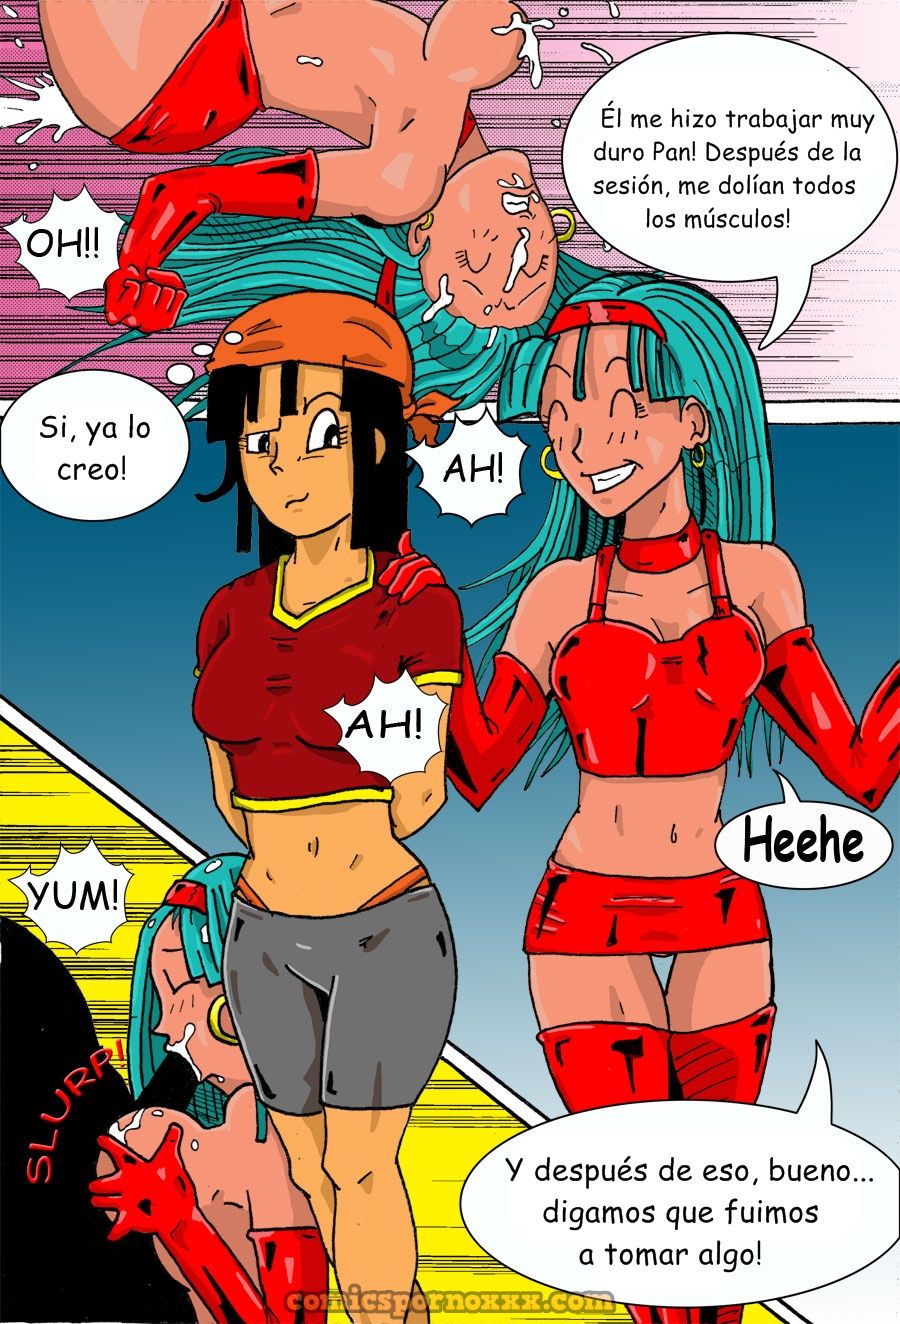 Pan and Bra - 3 - Comics Porno - Hentai Manga - Cartoon XXX